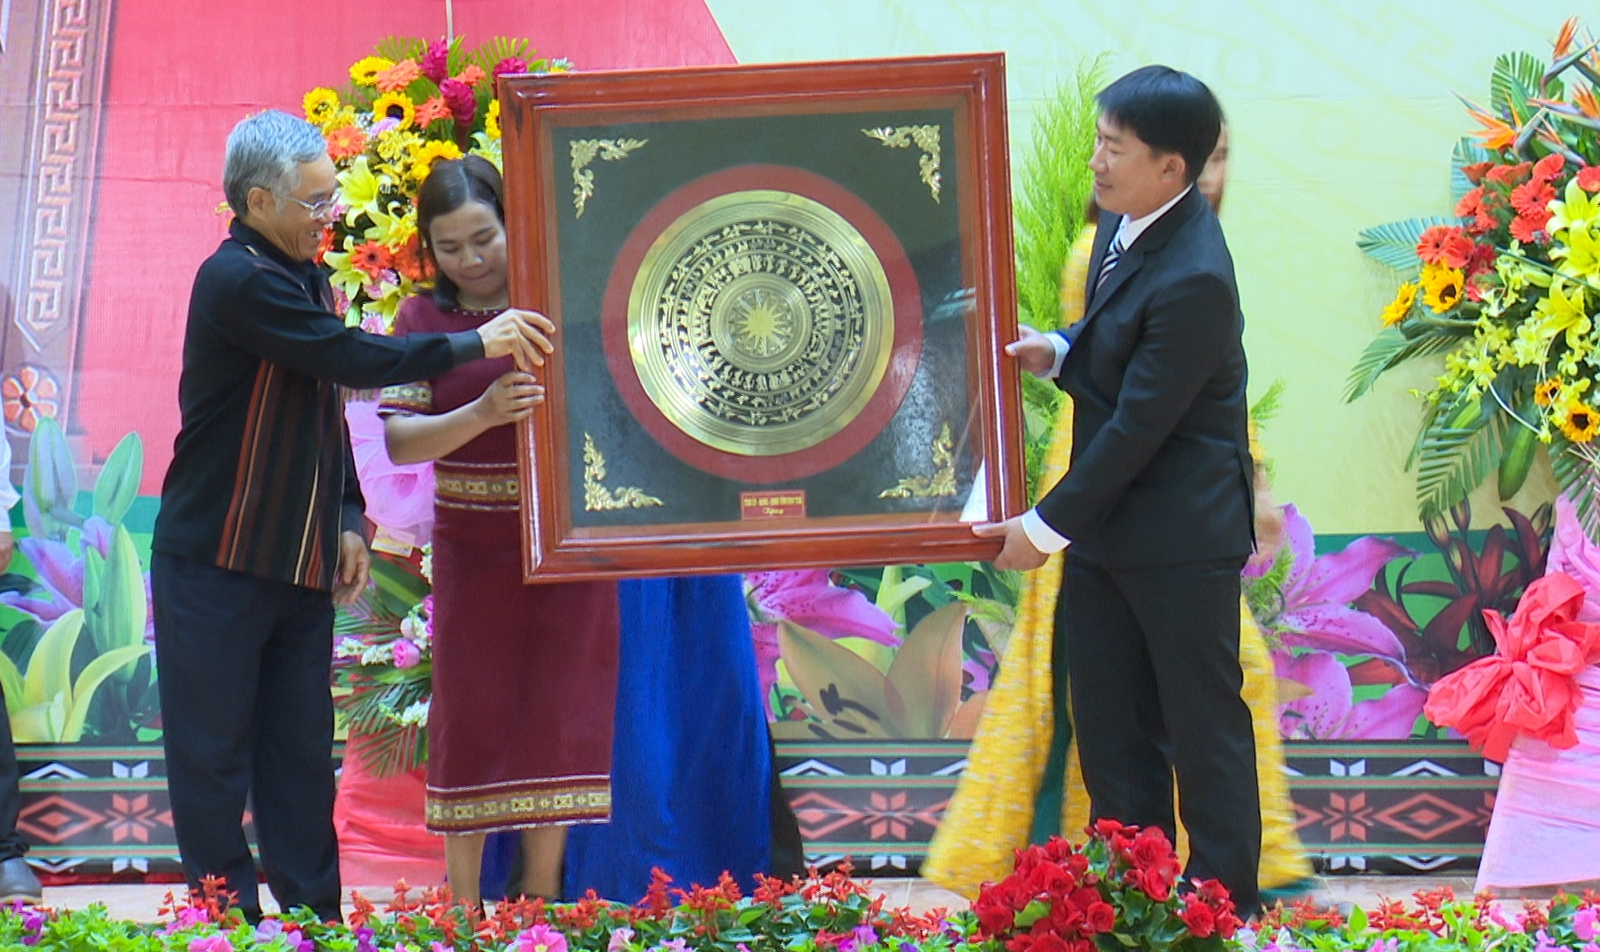 Đồng chí Nguyễn Văn Hùng, Bí thư Tỉnh ủy phát biểu tặng quà Thị trấn Măng Đen